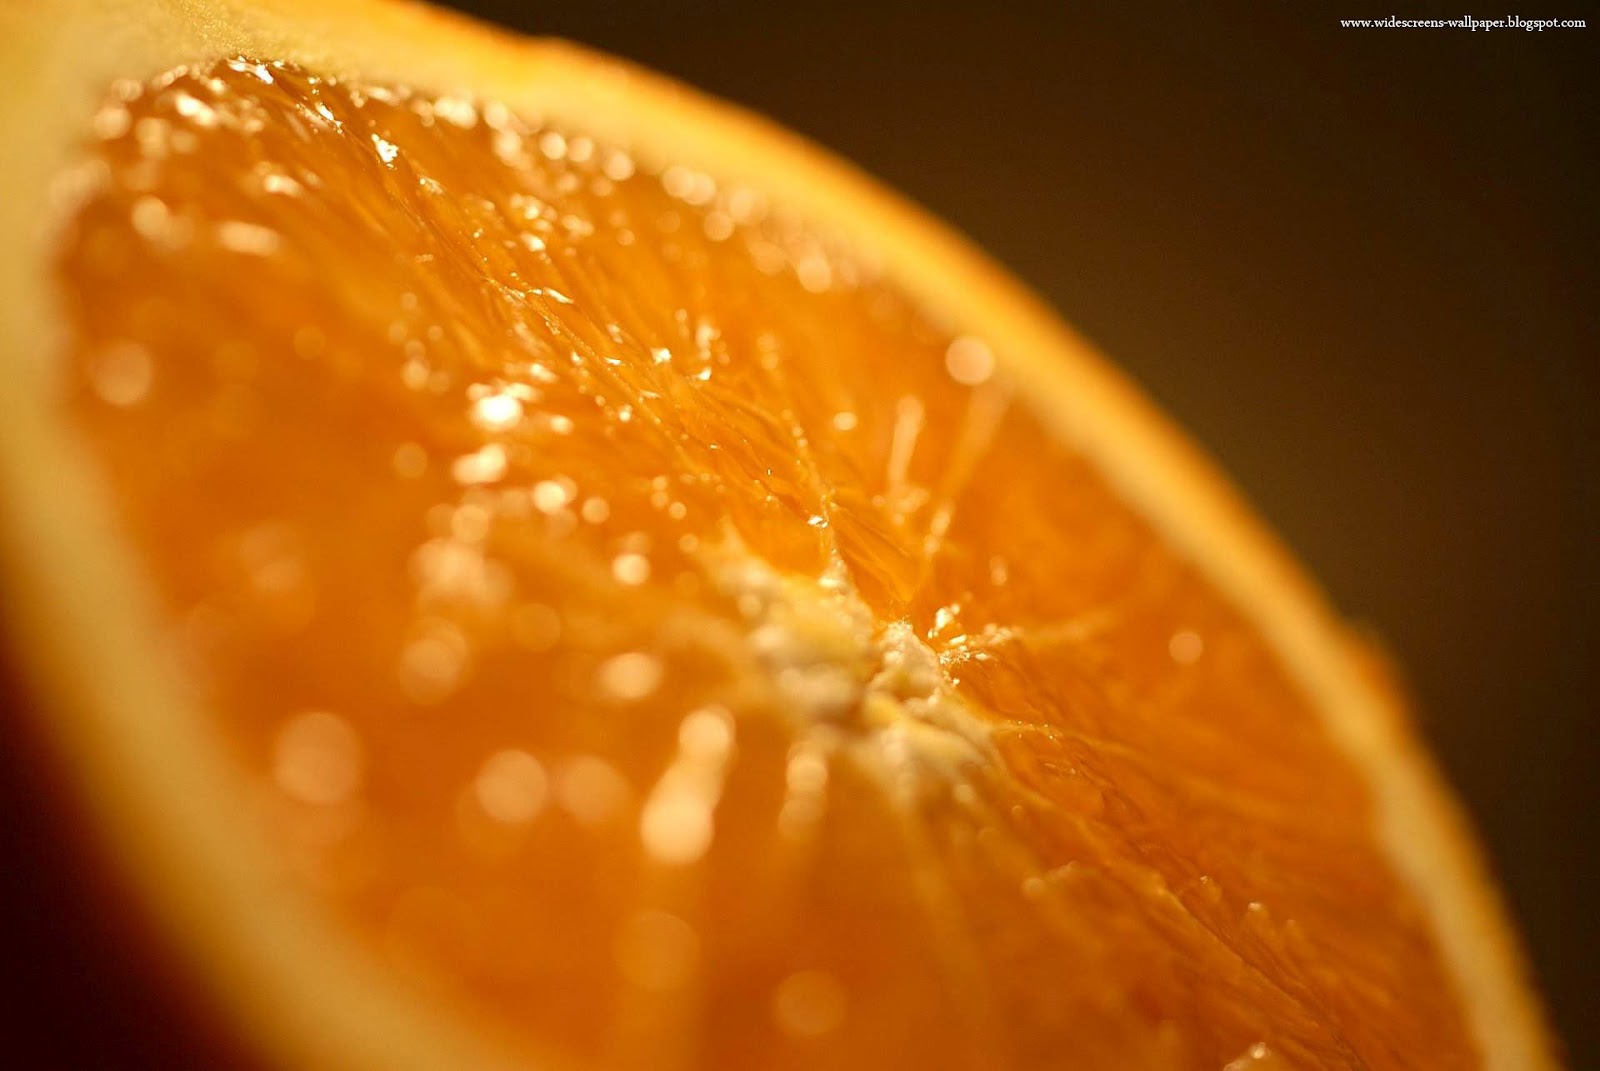 柑橘類の壁紙,オレンジ,クレメンタイン,柑橘類,マンダリンオレンジ,マクロ撮影